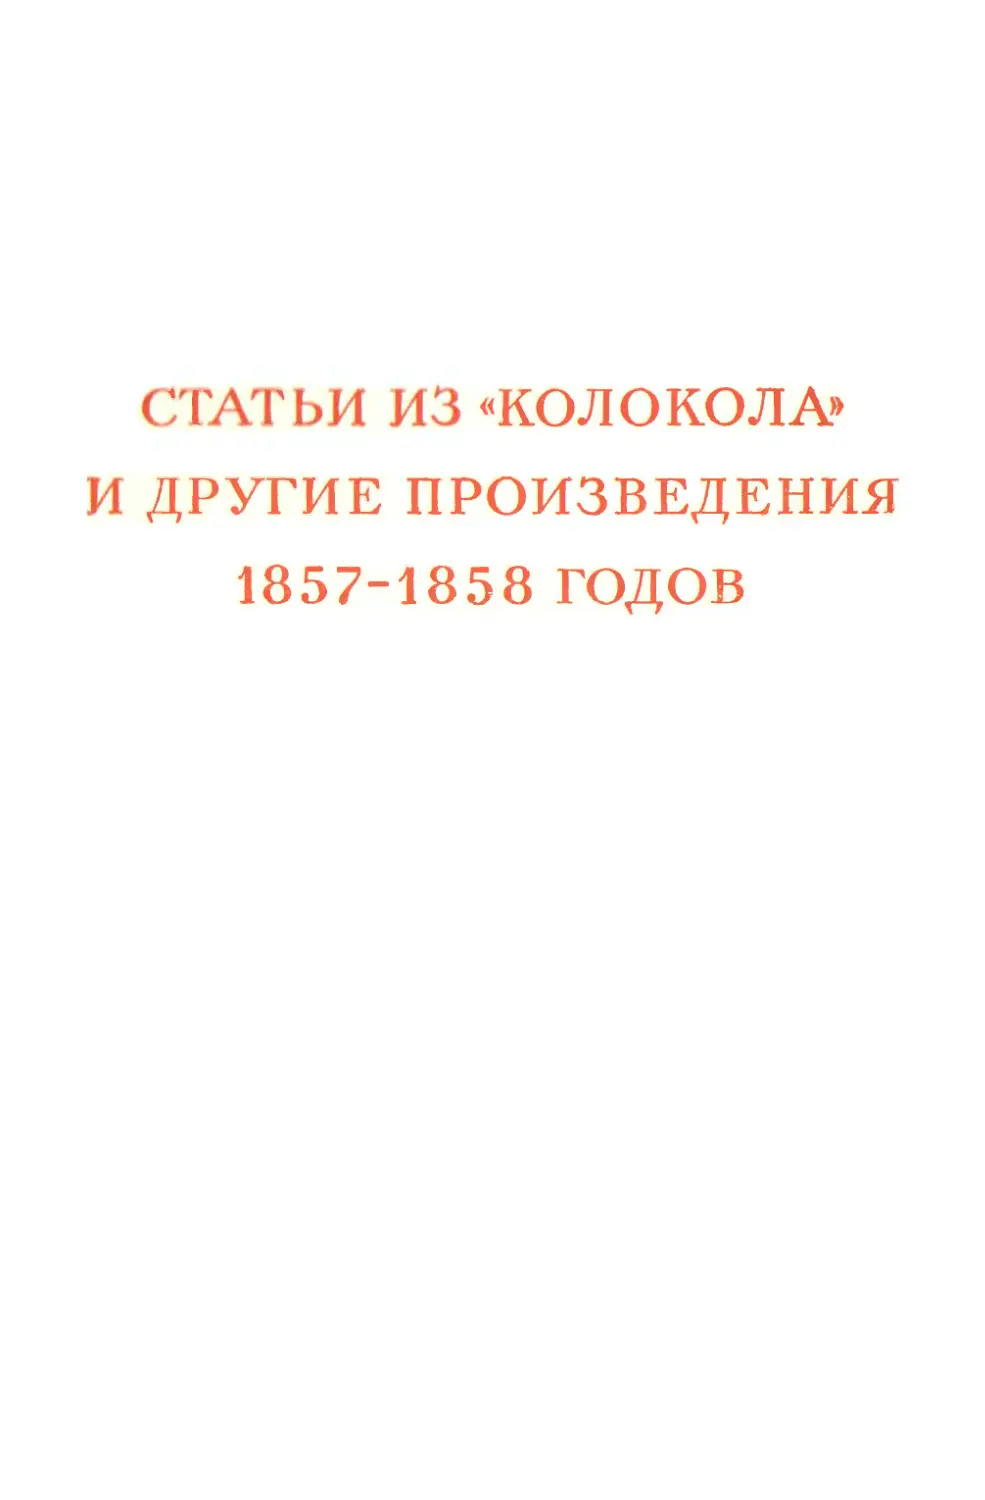 СТАТЬИ ИЗ «КОЛОКОЛА» И ДРУГИЕ ПРОИЗВЕДЕНИЯ 1857—1858 годов